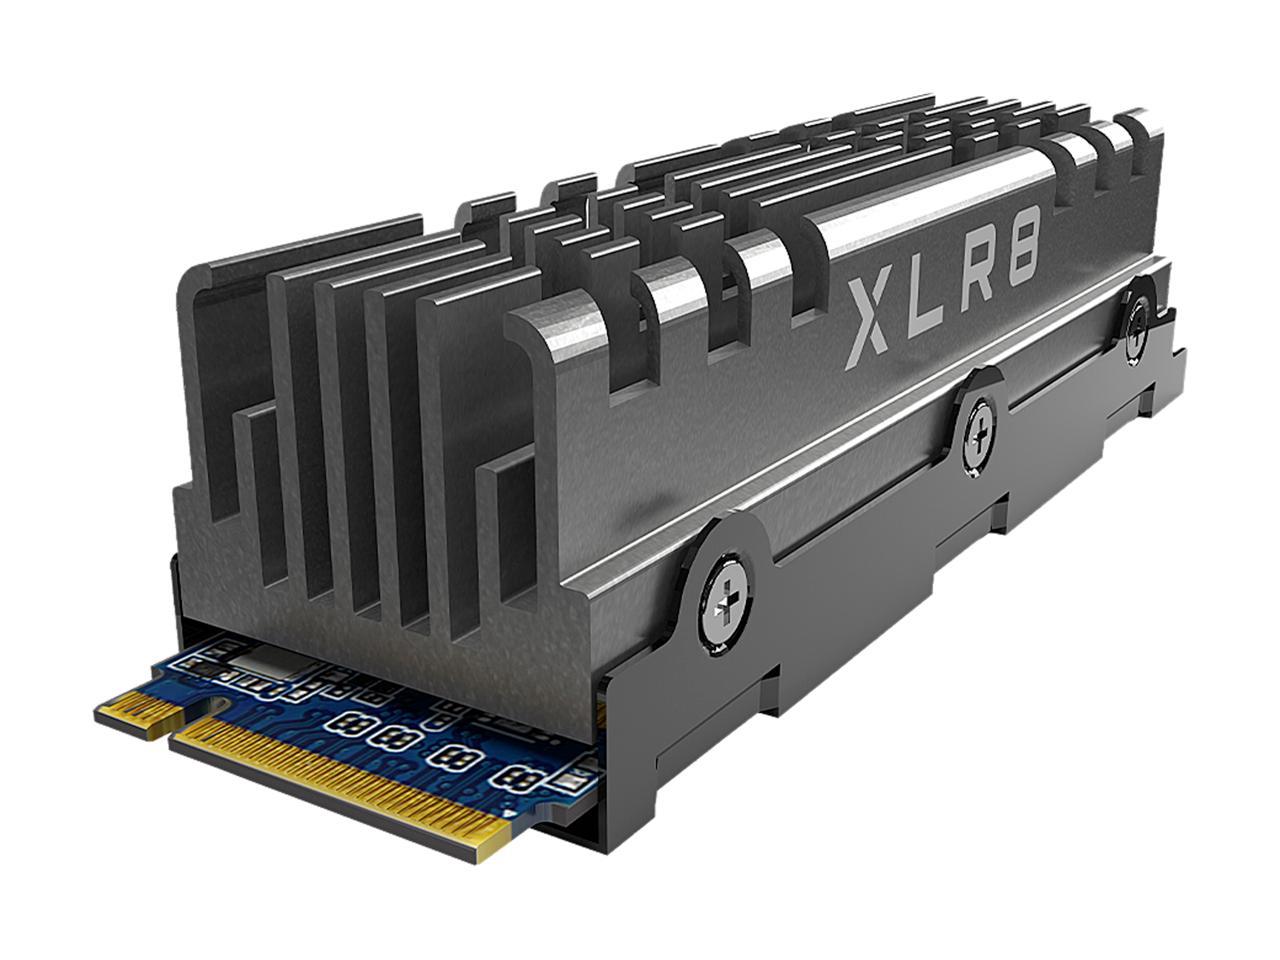 Pny Xlr8 Cs3040 2Tb M.2 Nvme Gen4 X4 Internal Solid State Drive (Ssd) With Heatsink - M280Cs3040Hs-2Tb-Rb